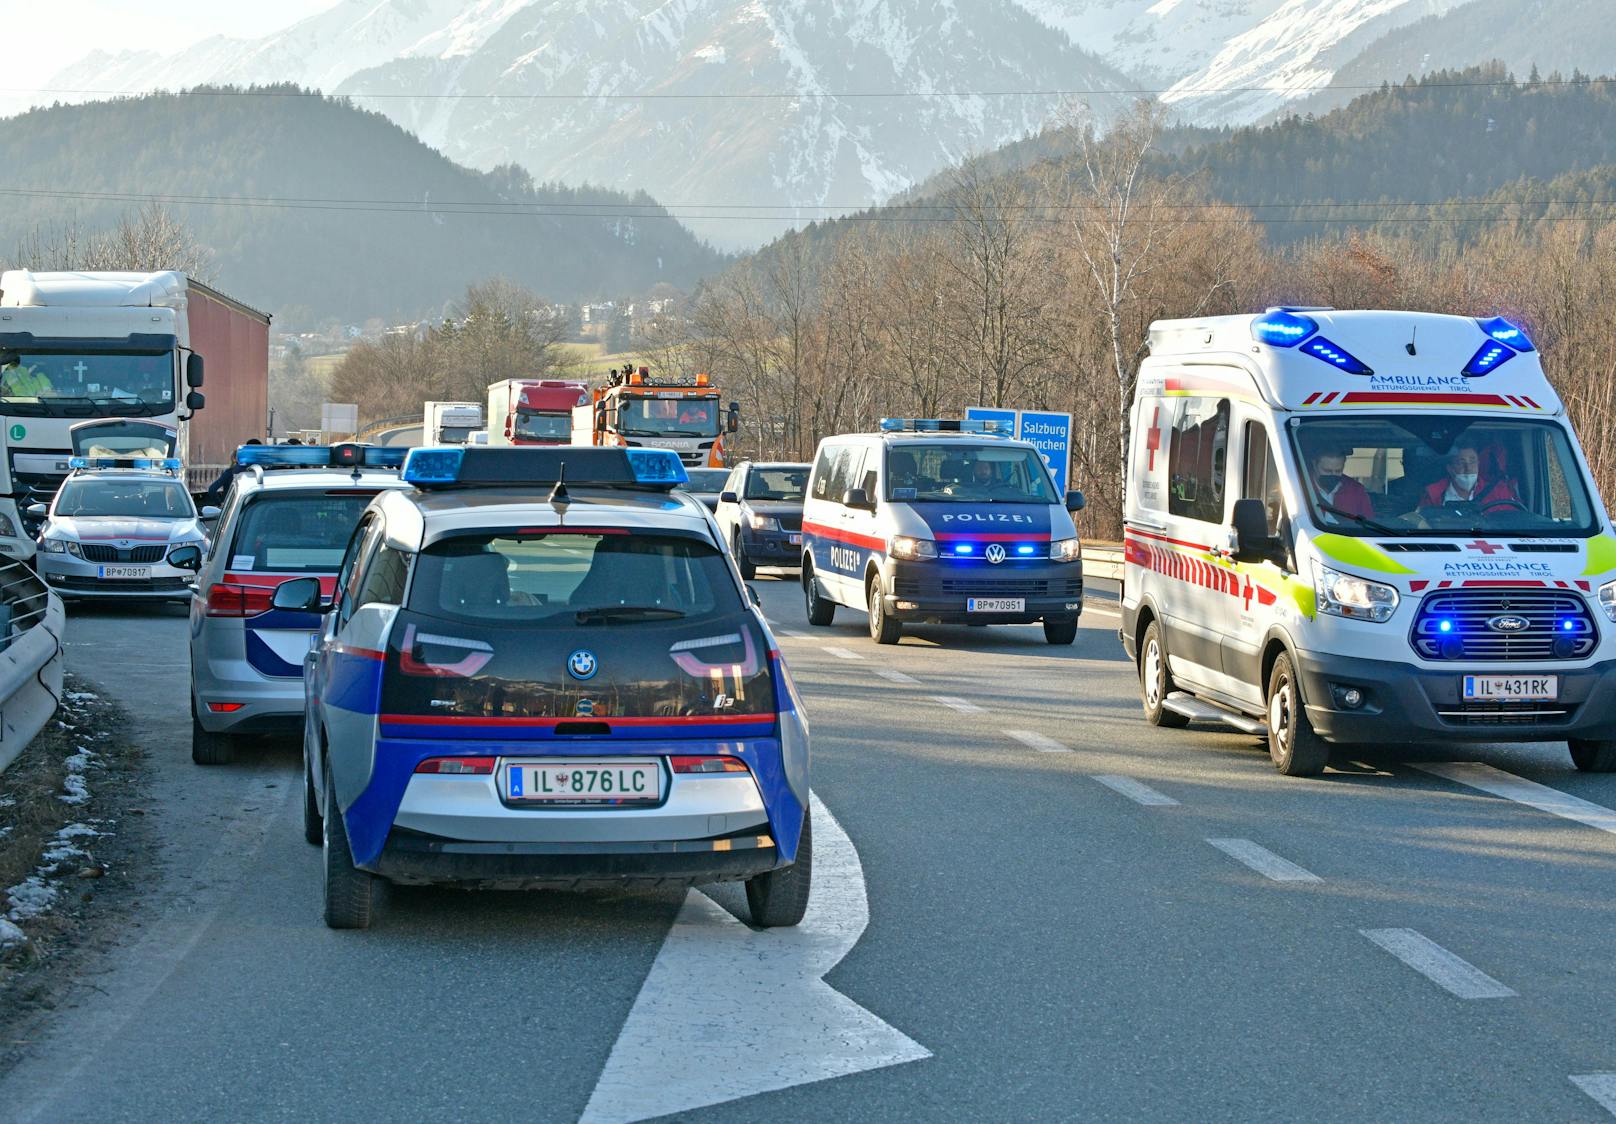 LKW-Lenker verprügelt Polizisten auf Autobahn